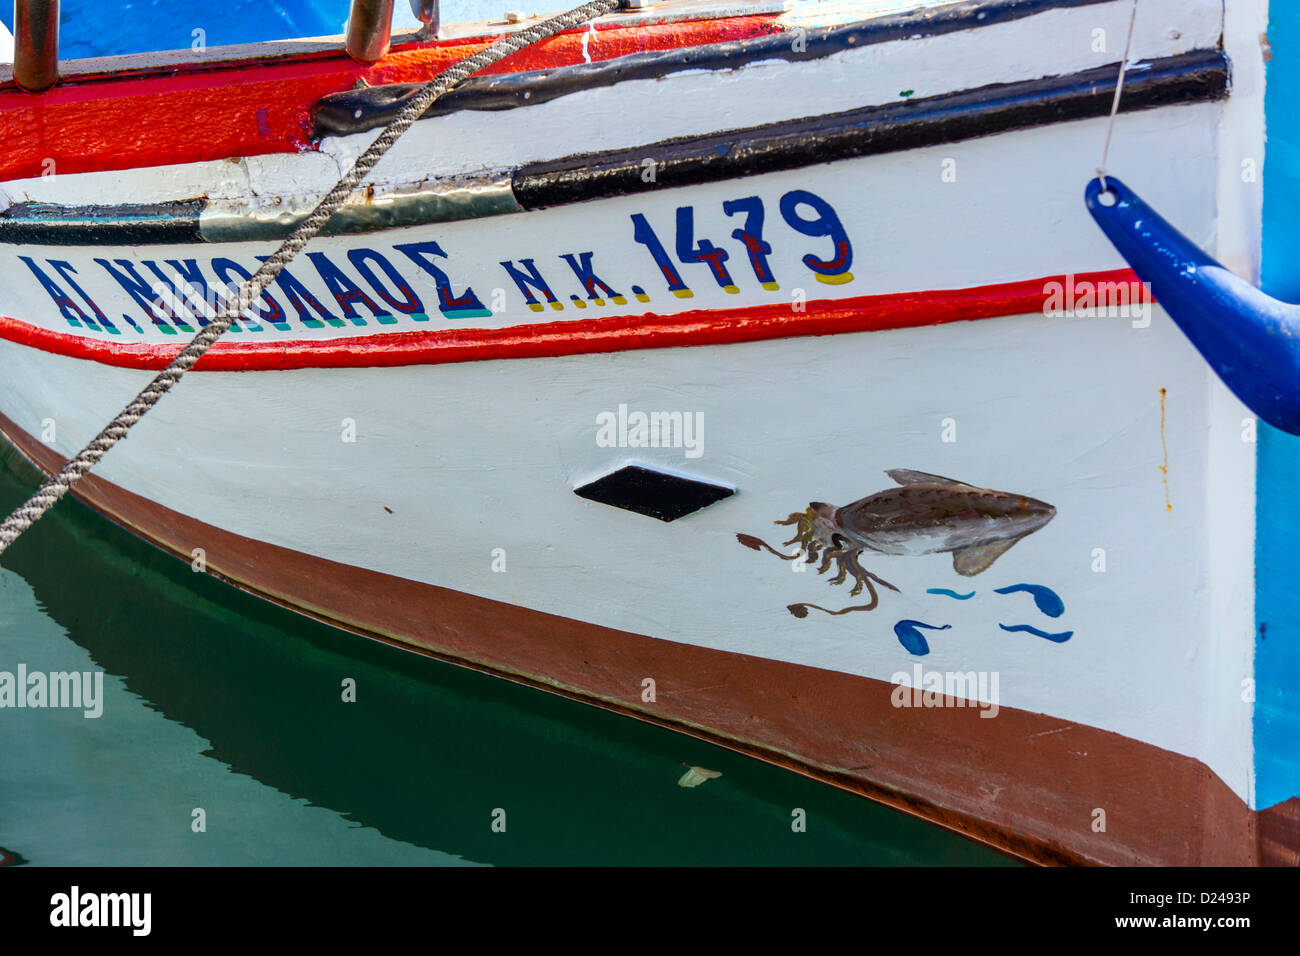 Bateau de pêche grec proue avec nom et photo, Vathy, Kalymnos, Grèce Banque D'Images